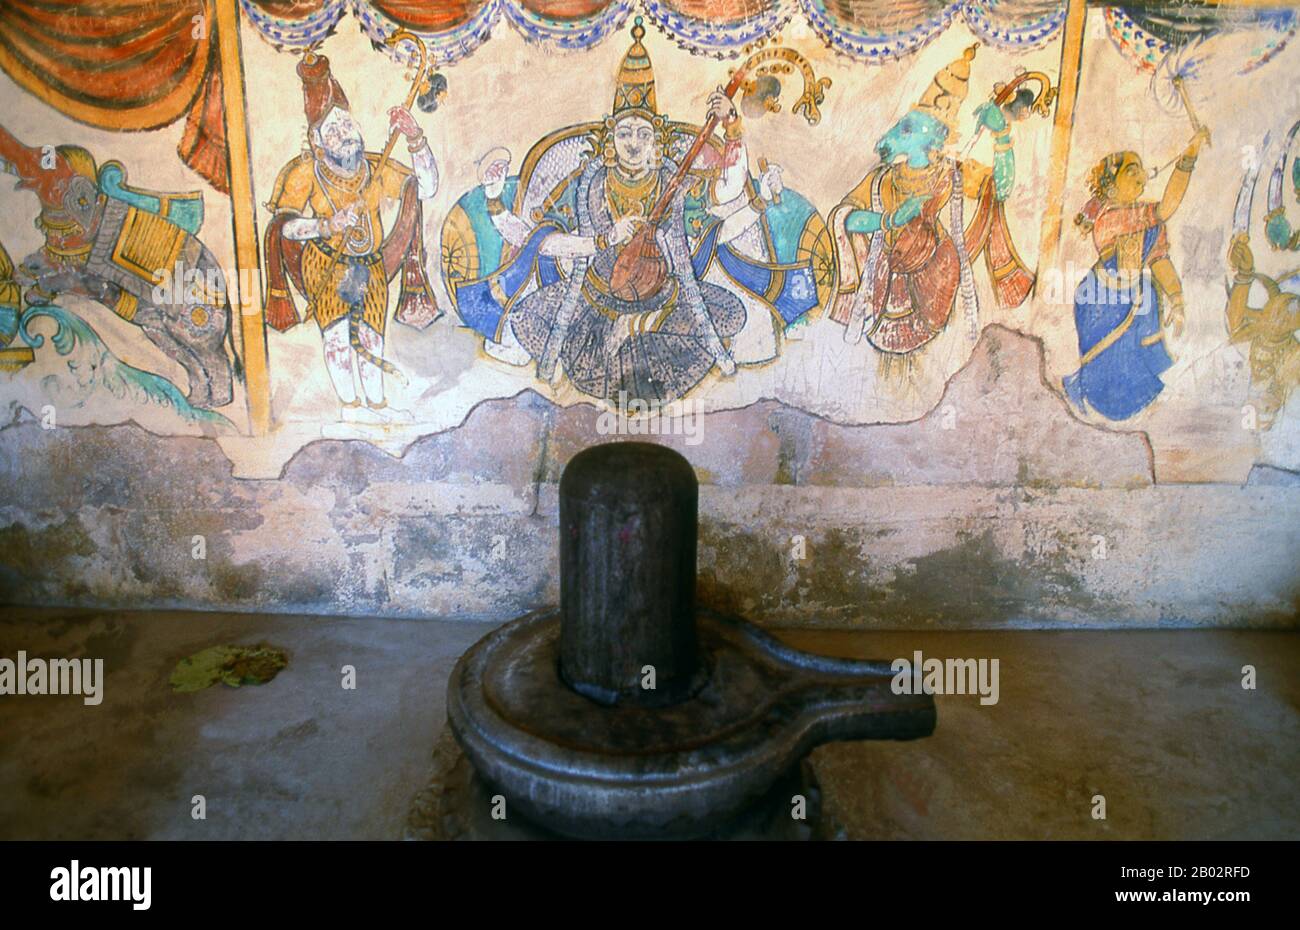 Der Brihadeeswarar-Tempel ist ein großer Hindu-Tempel, der dem gott Shiva gewidmet ist. Der Tempel wurde 1010 durch den Chola-Dynastie-Kaiser Raja Raja Chola I (r. 985 - 1014 CE), einer der größten indischen Kaiser. Stockfoto